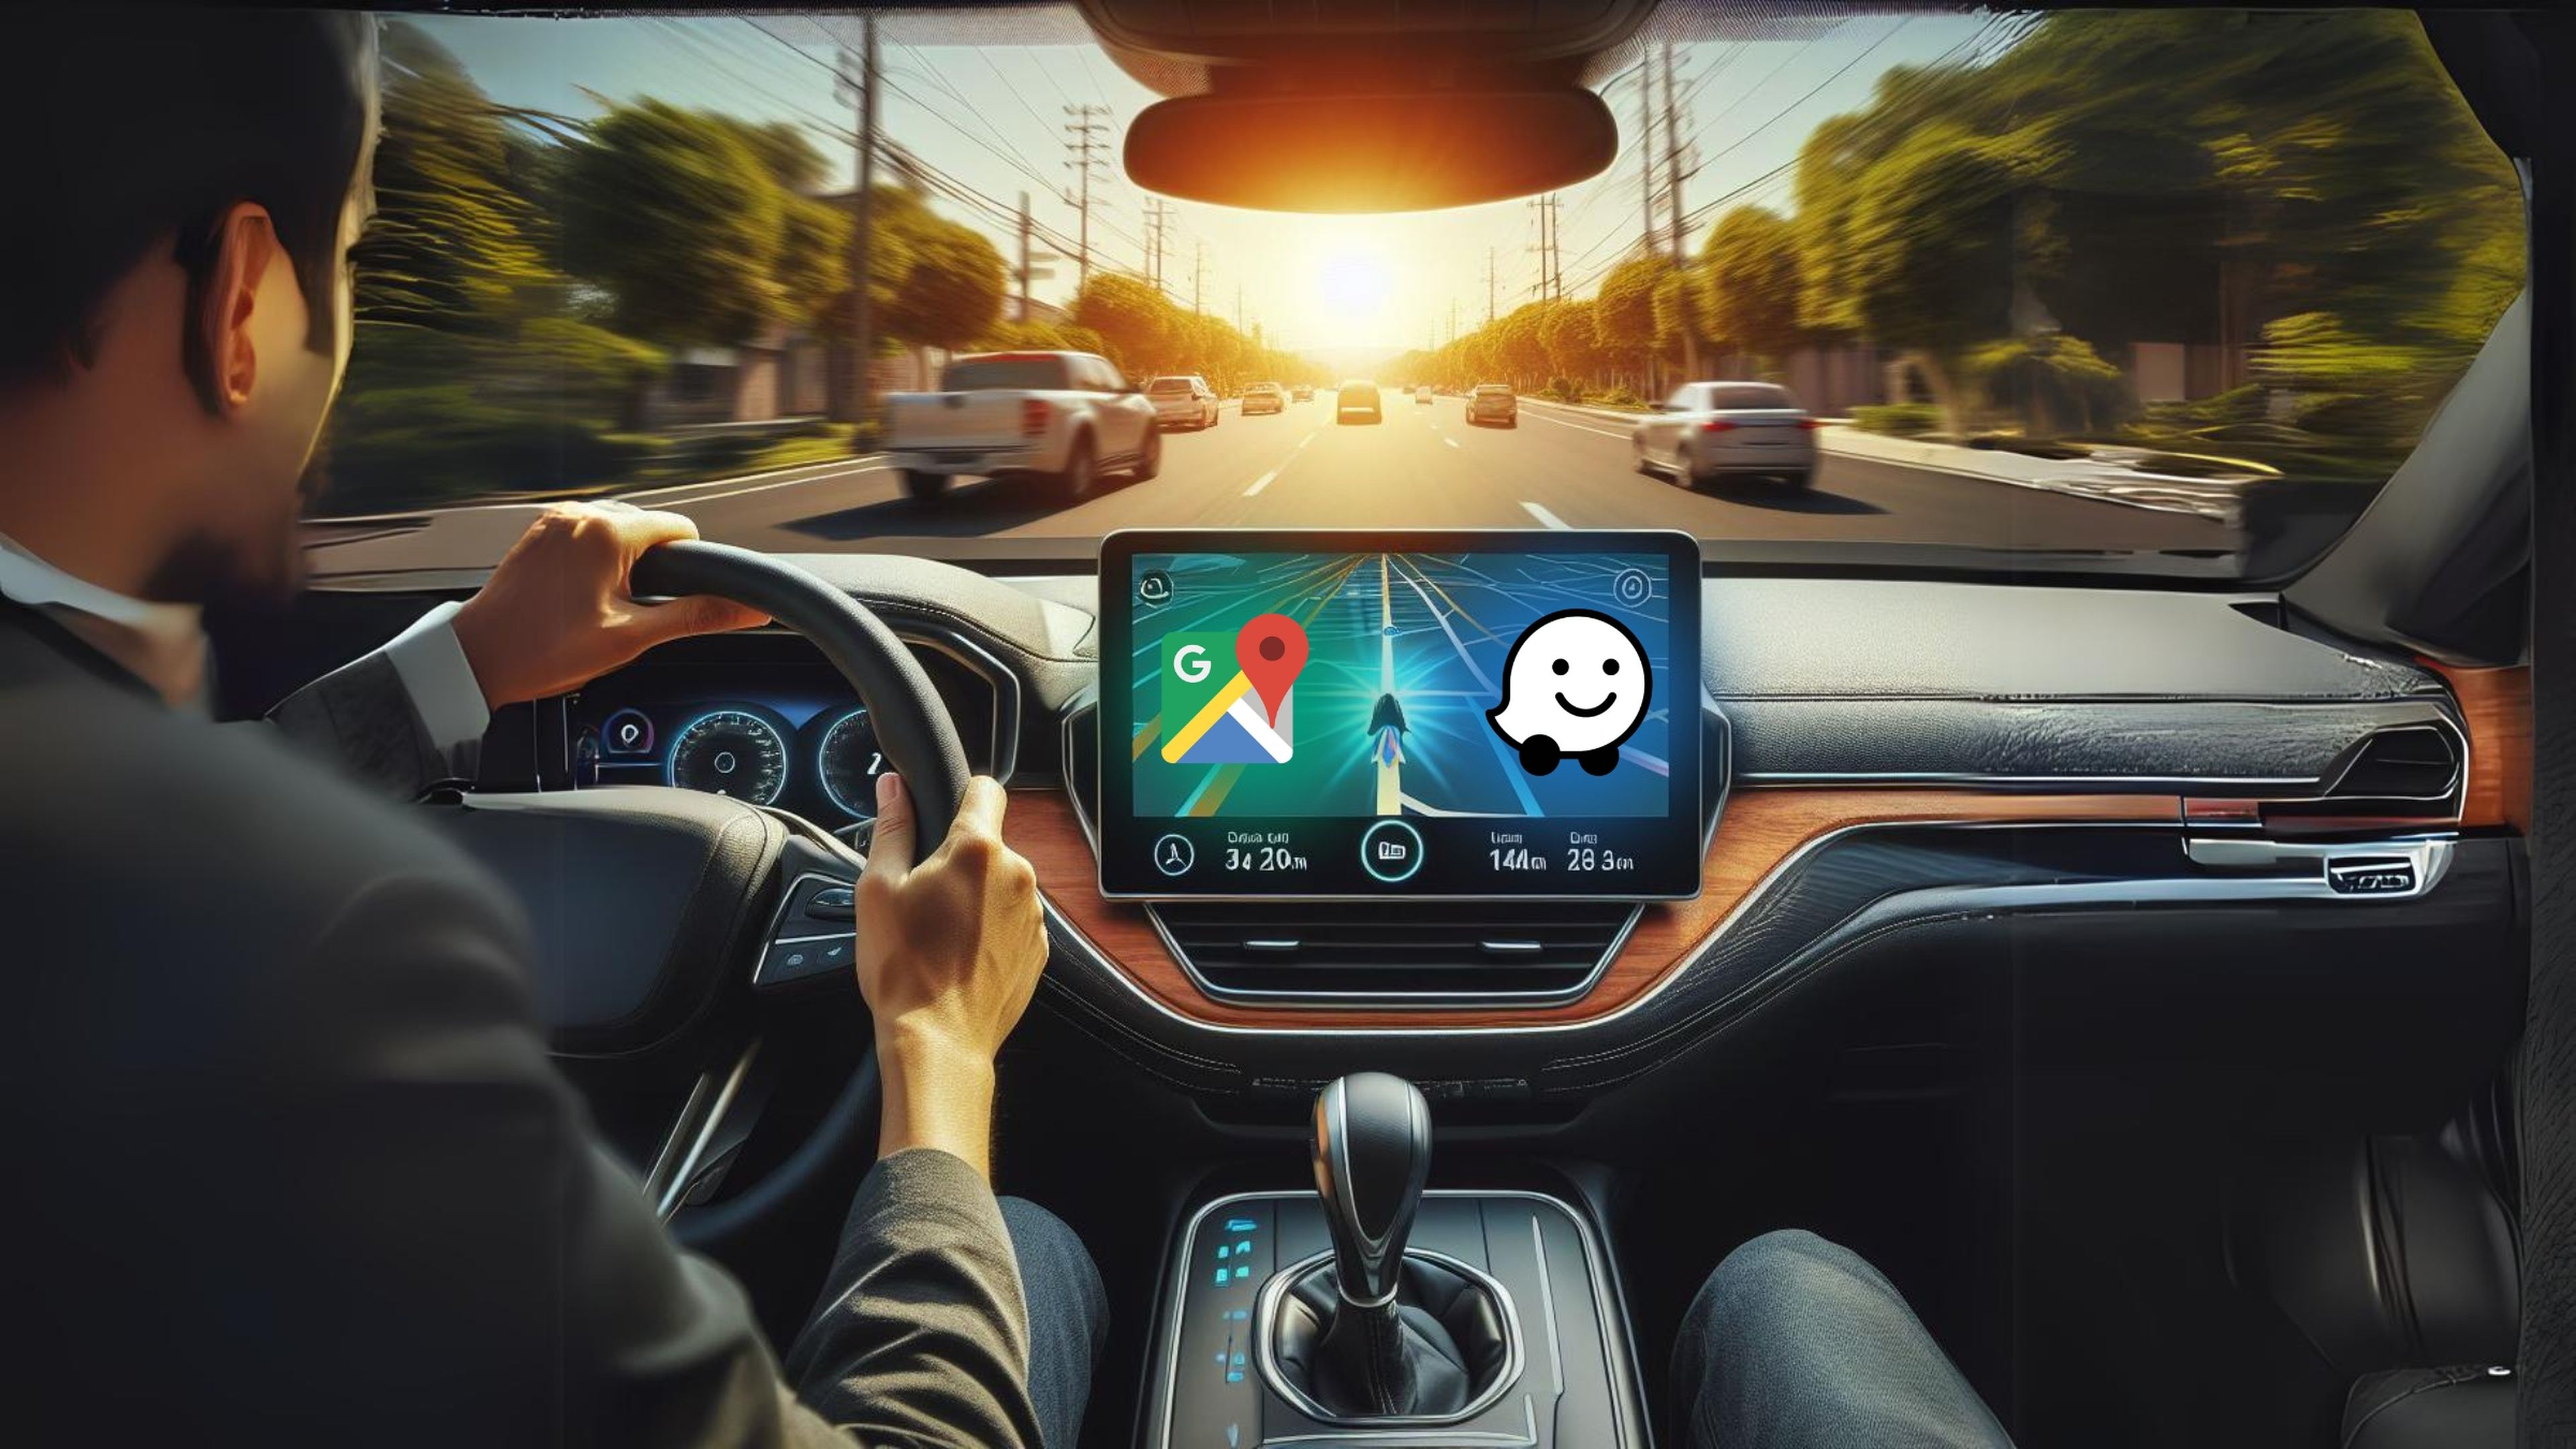 ¿Google Maps o Waze? Dime cómo conduces y te diré cuál es mejor para ti